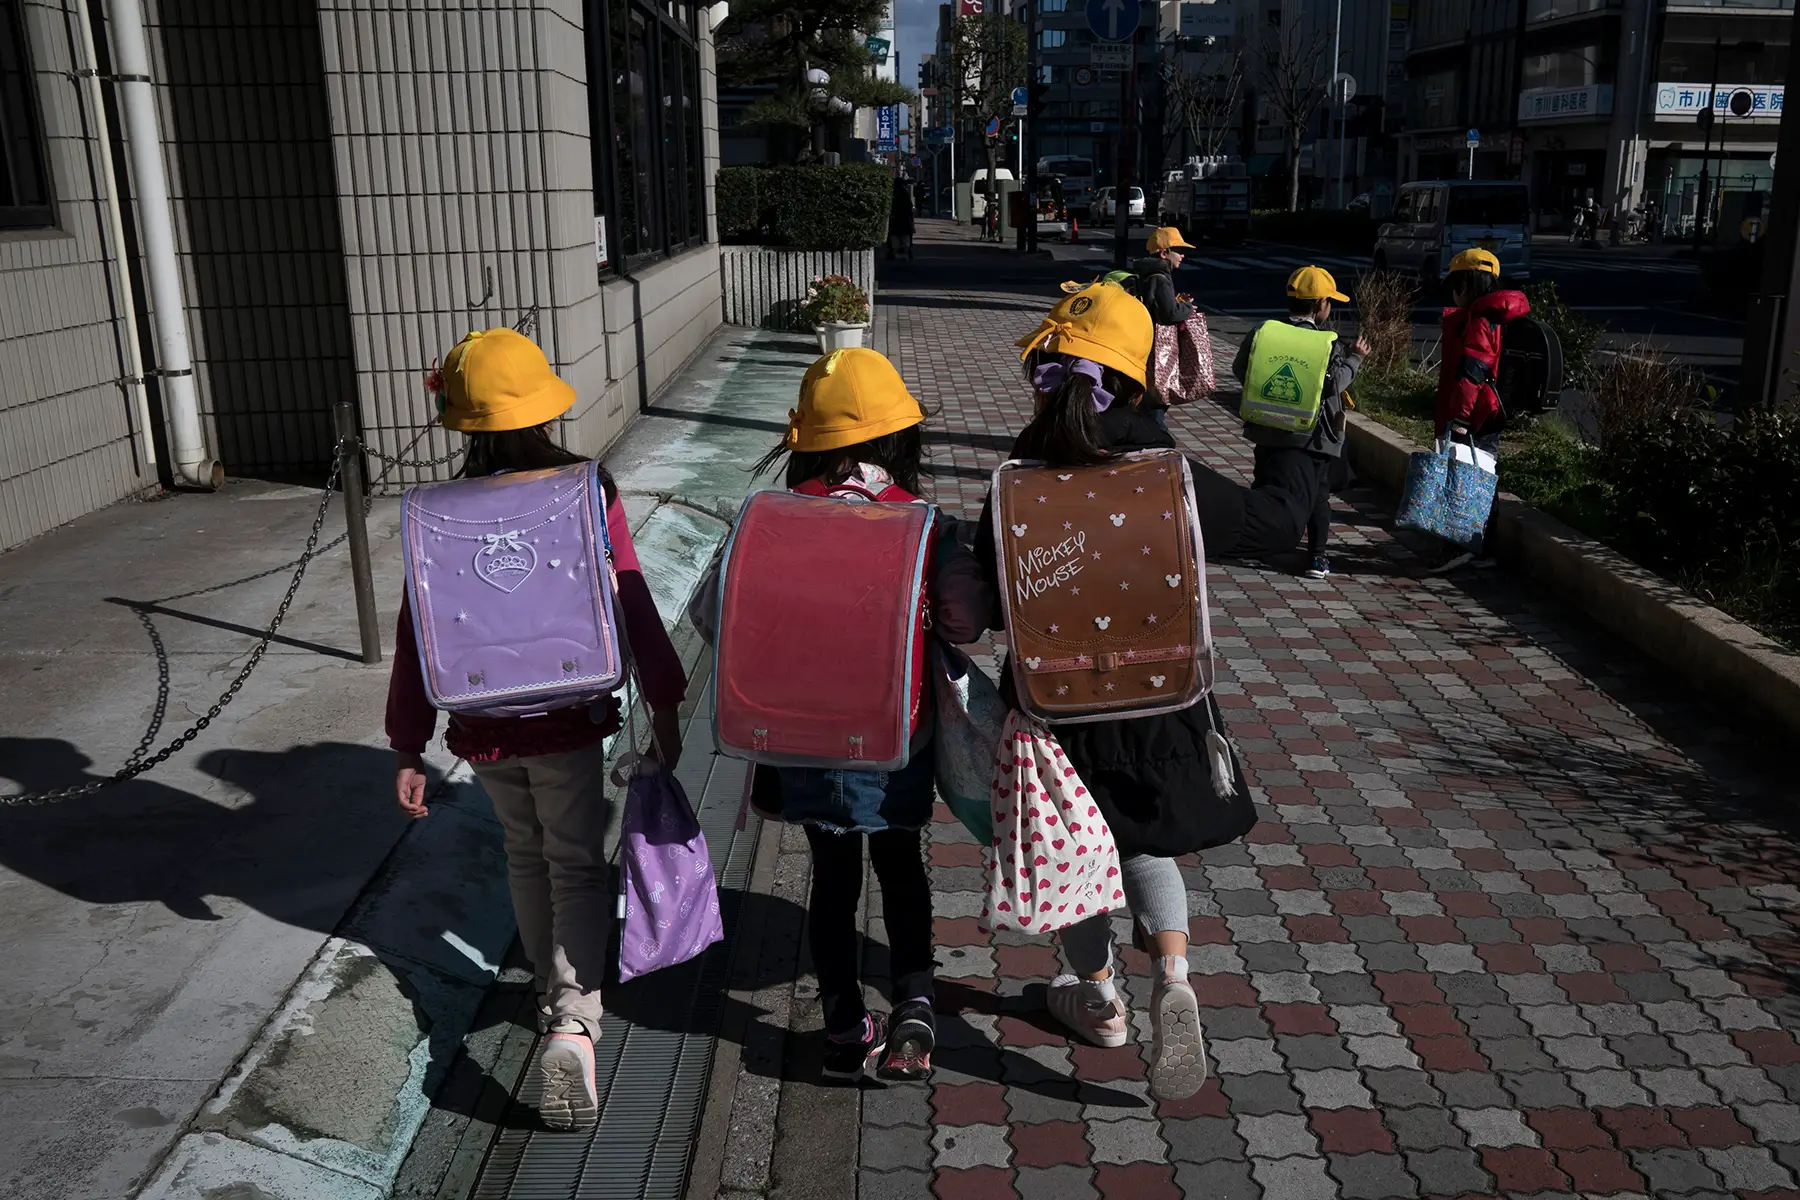 Primary school children with big backpacks walking to school